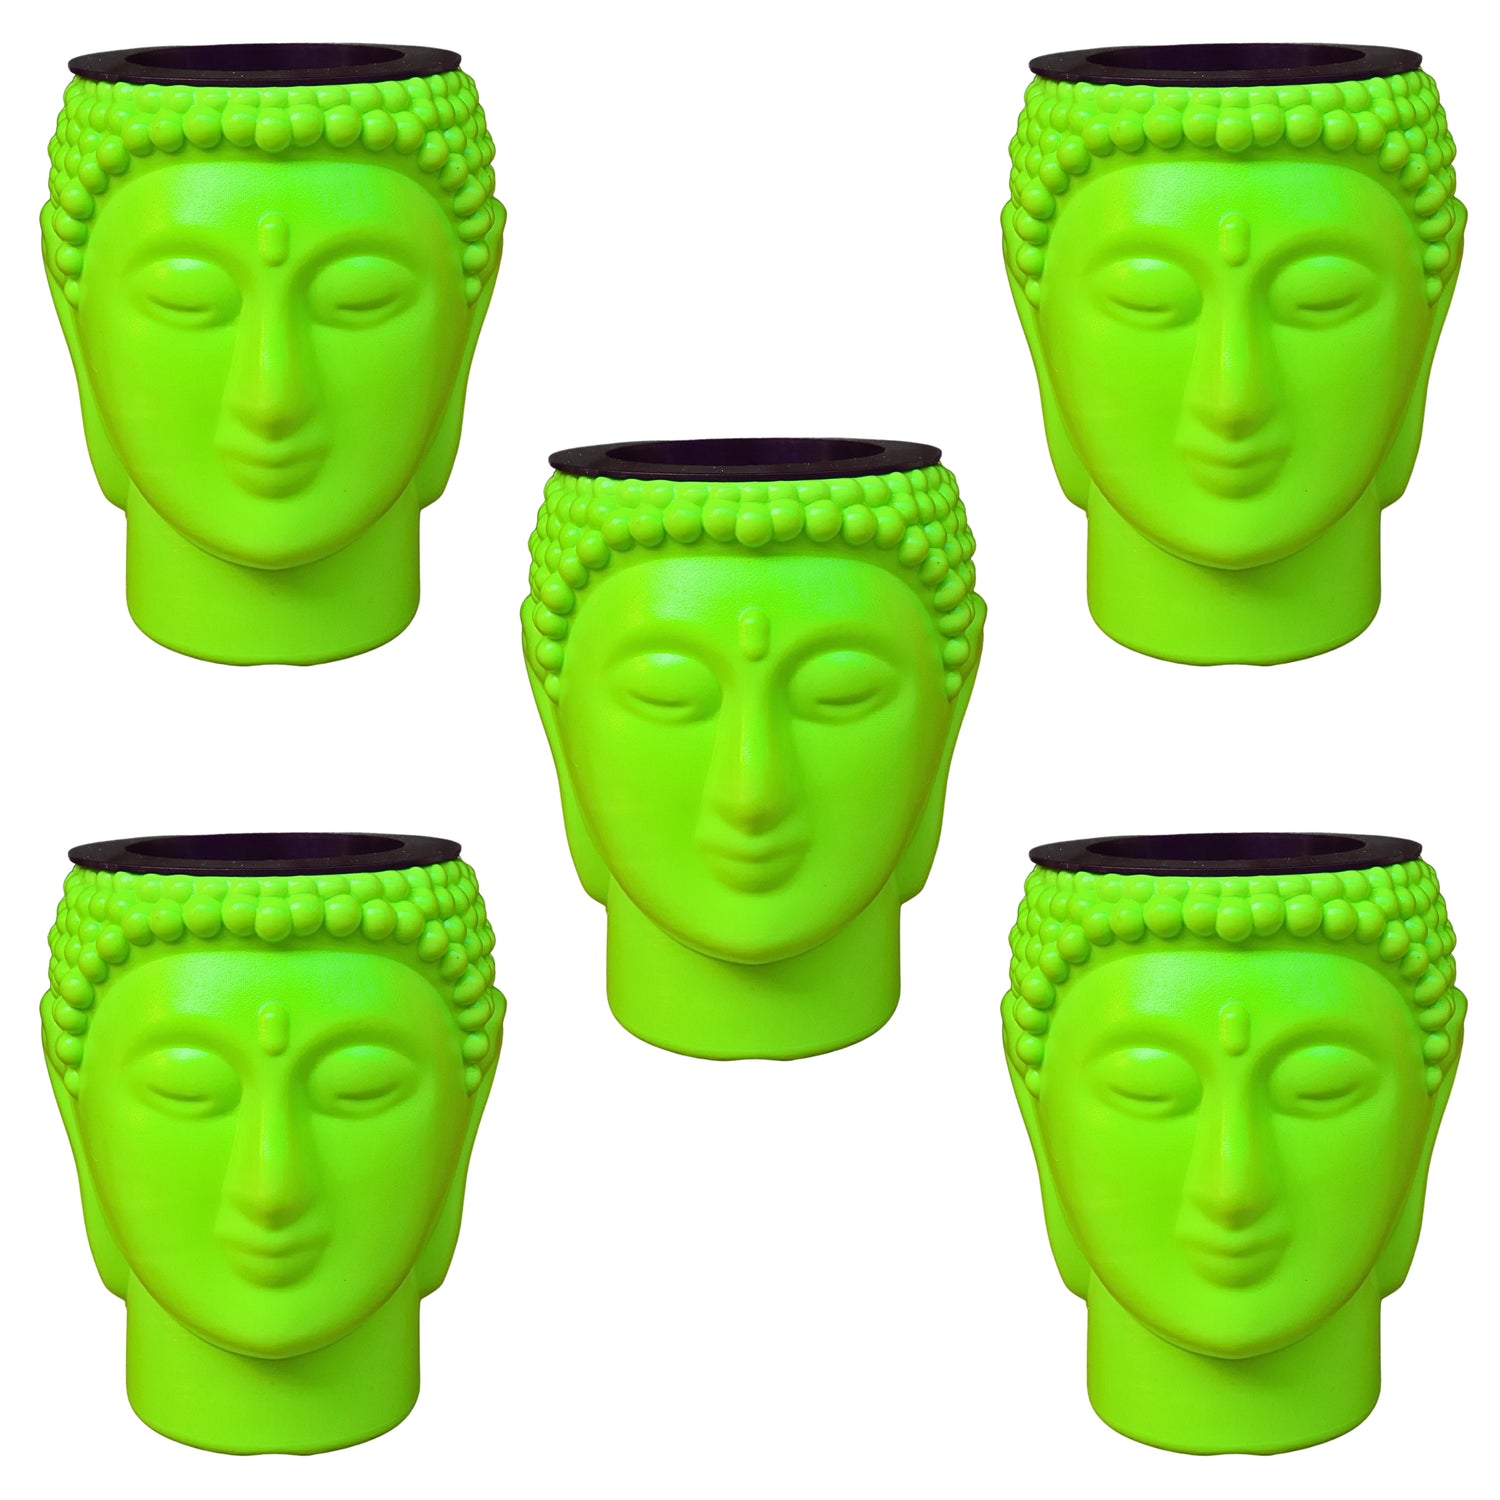 Buddha Pot / Planter - Green Colour